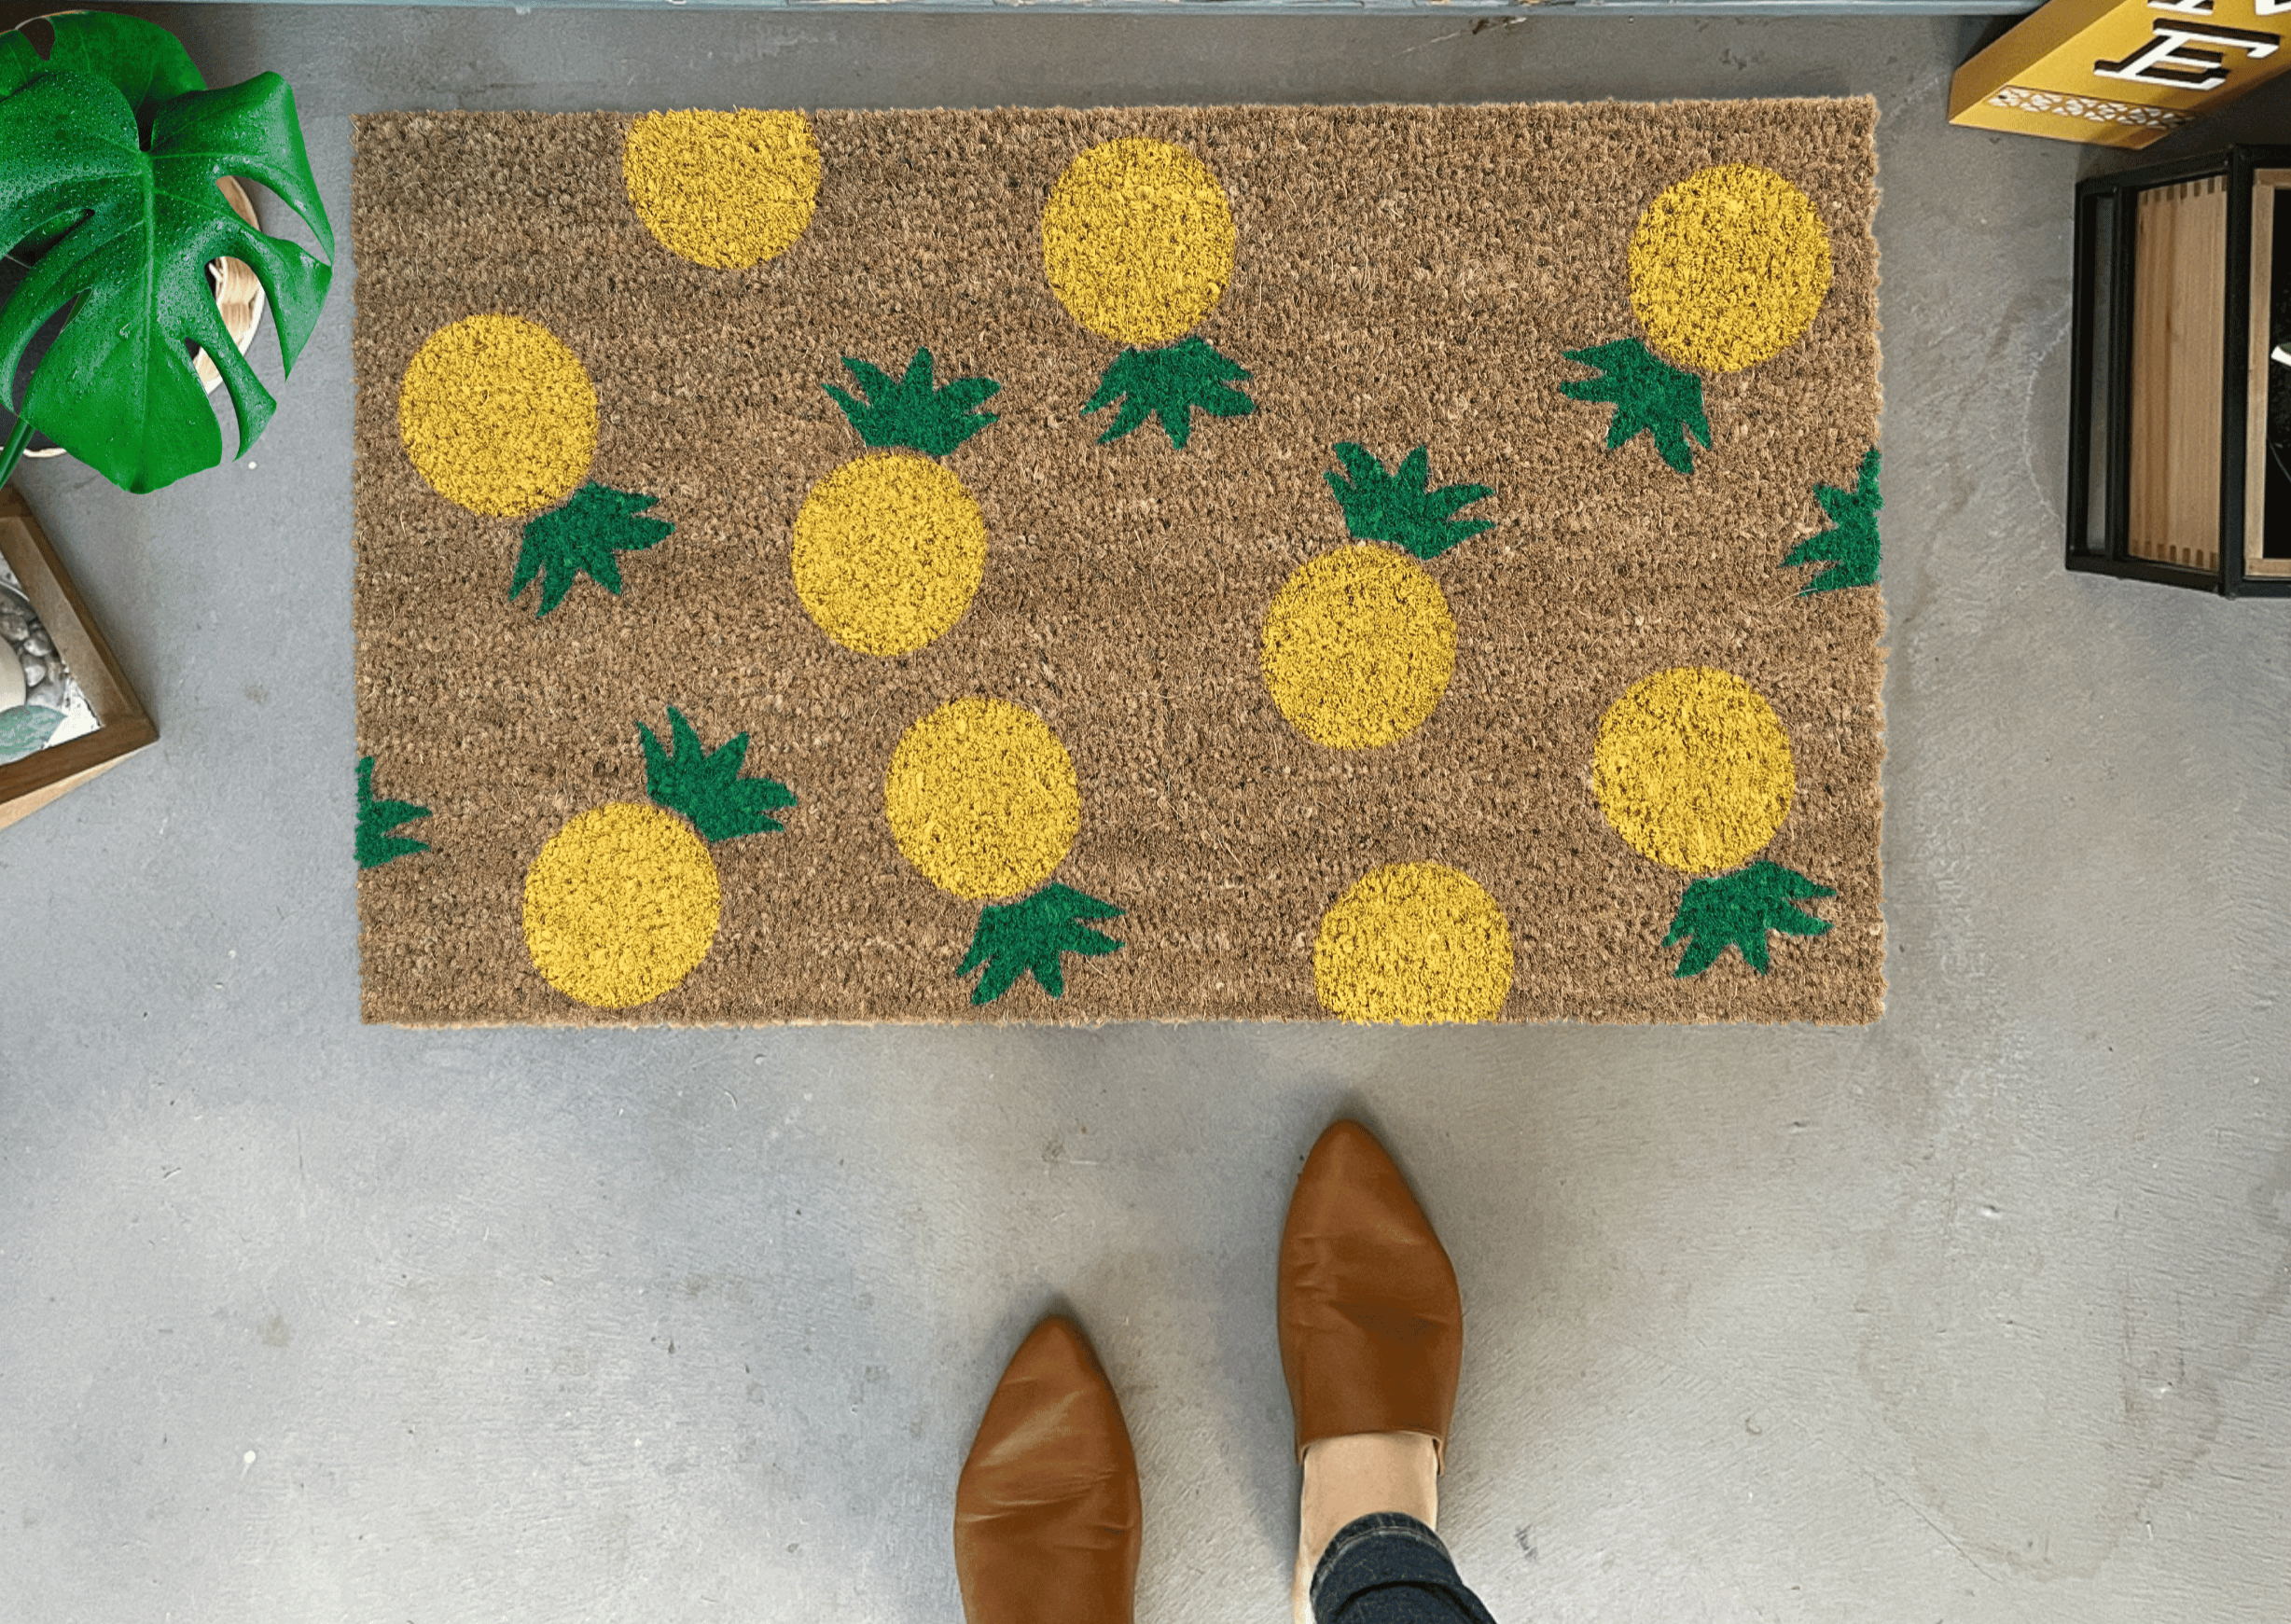 Lemon Doormat / Pattern Door Mat / Outdoor Welcome Mat / Housewarming Gift  / Spring Decor / Lemon Decor / Summer Doormat / Nickel Designs 